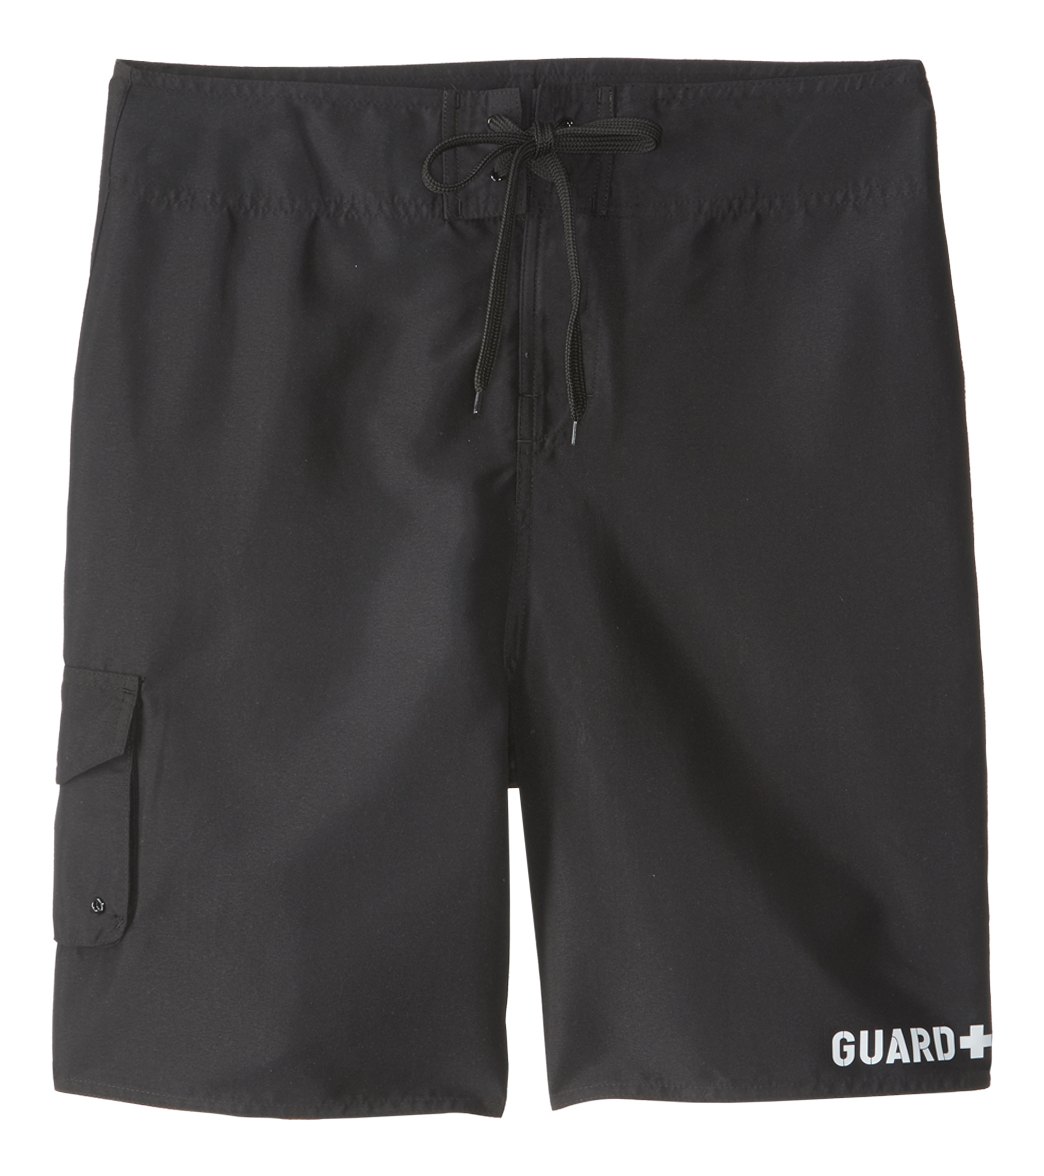 Sporti Guard Men's Essential Board Short - Black 32 Polyester - Swimoutlet.com